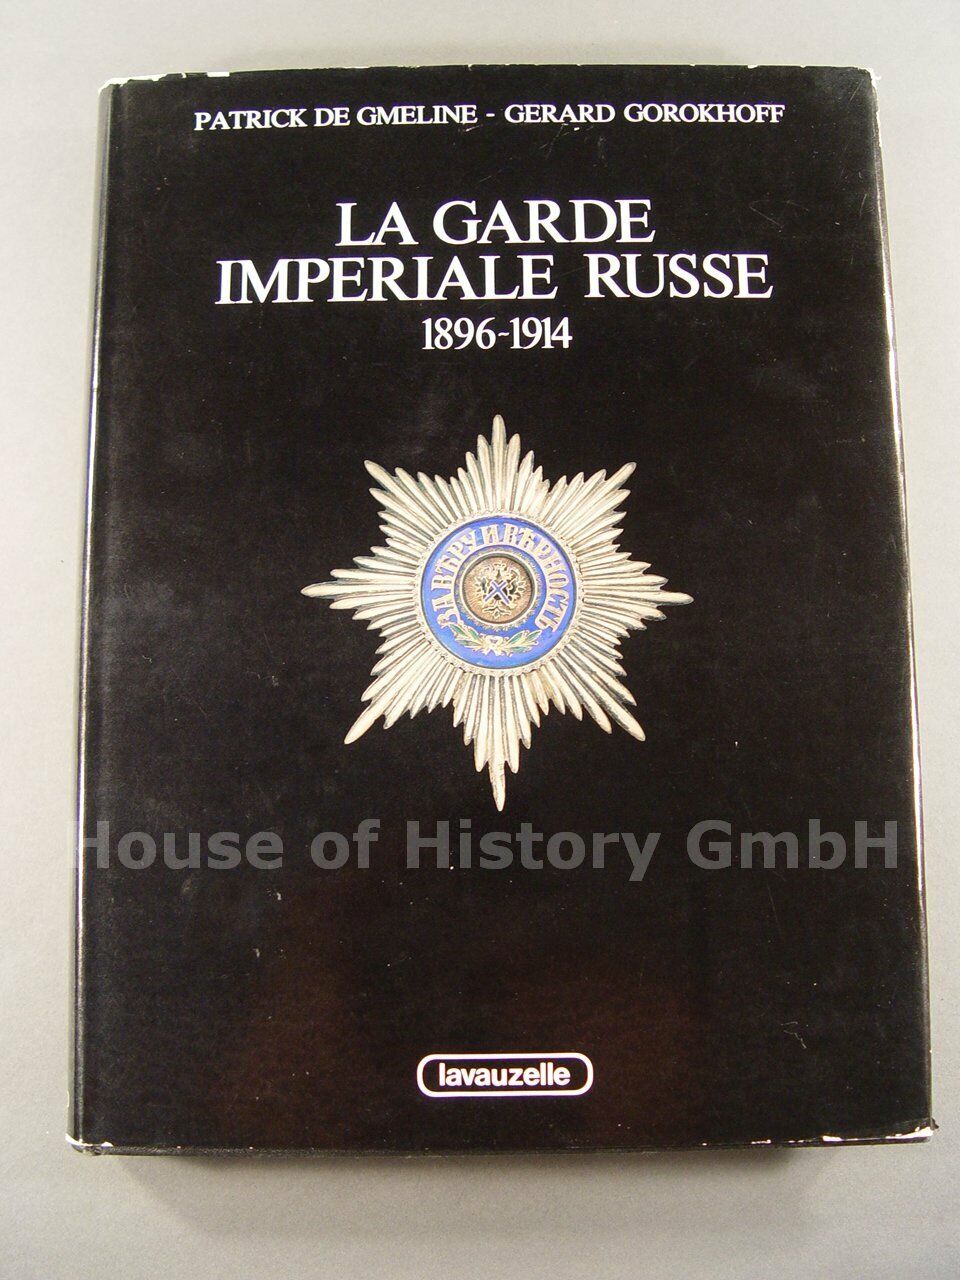 Details zu  126367: Buch LA GARDE IMPERIALE RUSSE 1896-1914,  de Gmeline, Gorokhoff, 1986 Günstig und beliebt